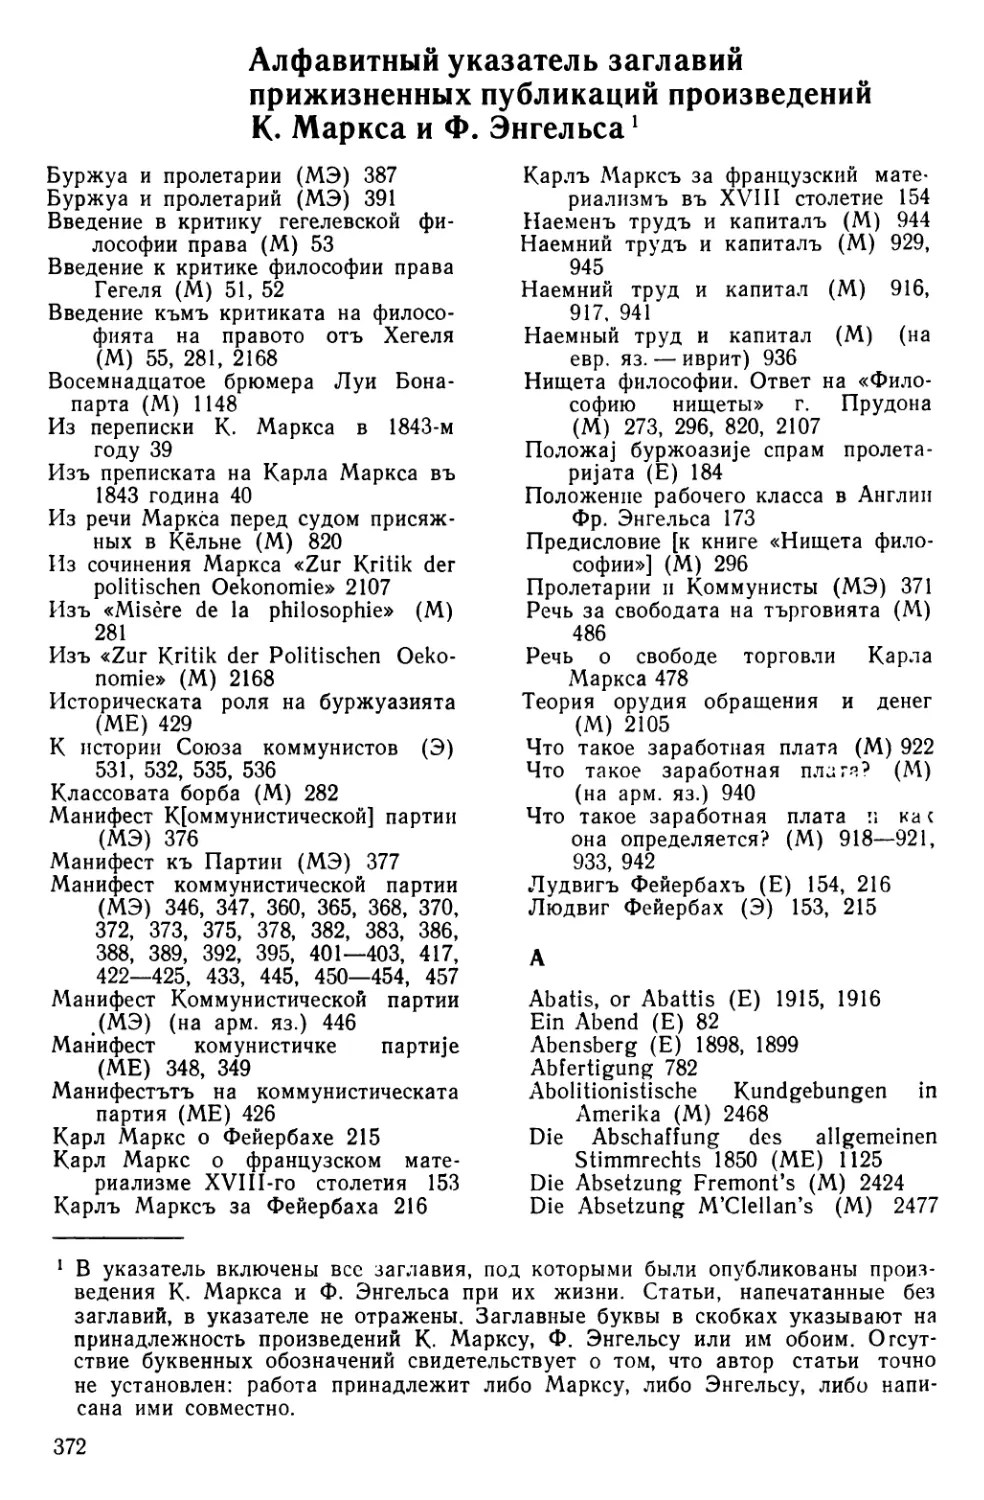 Алфавитный указатель заглавий прижизненных публикаций произведений К. Маркса и Ф. Энгельса